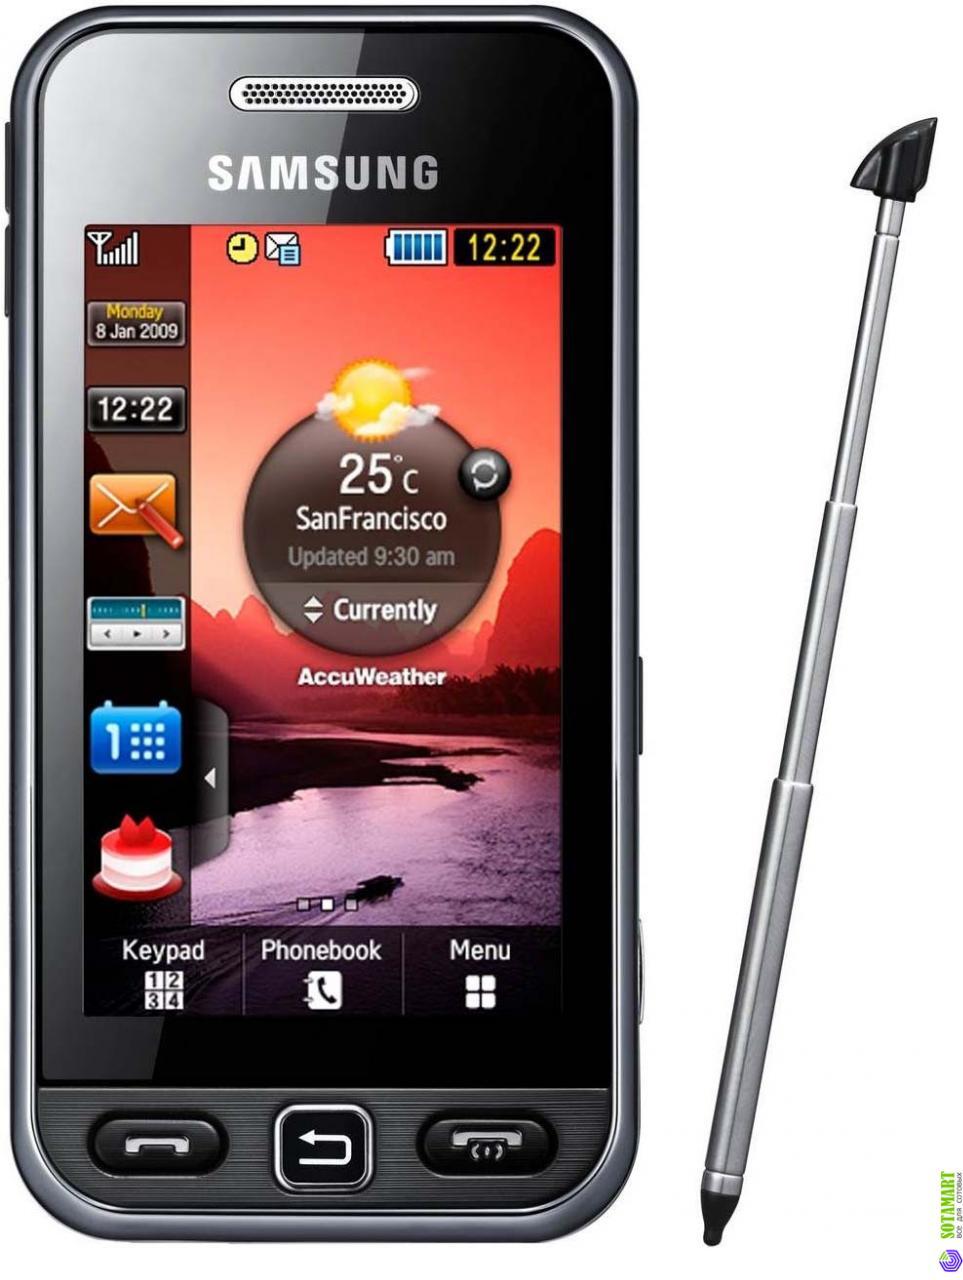 Nokia 5233 mobile